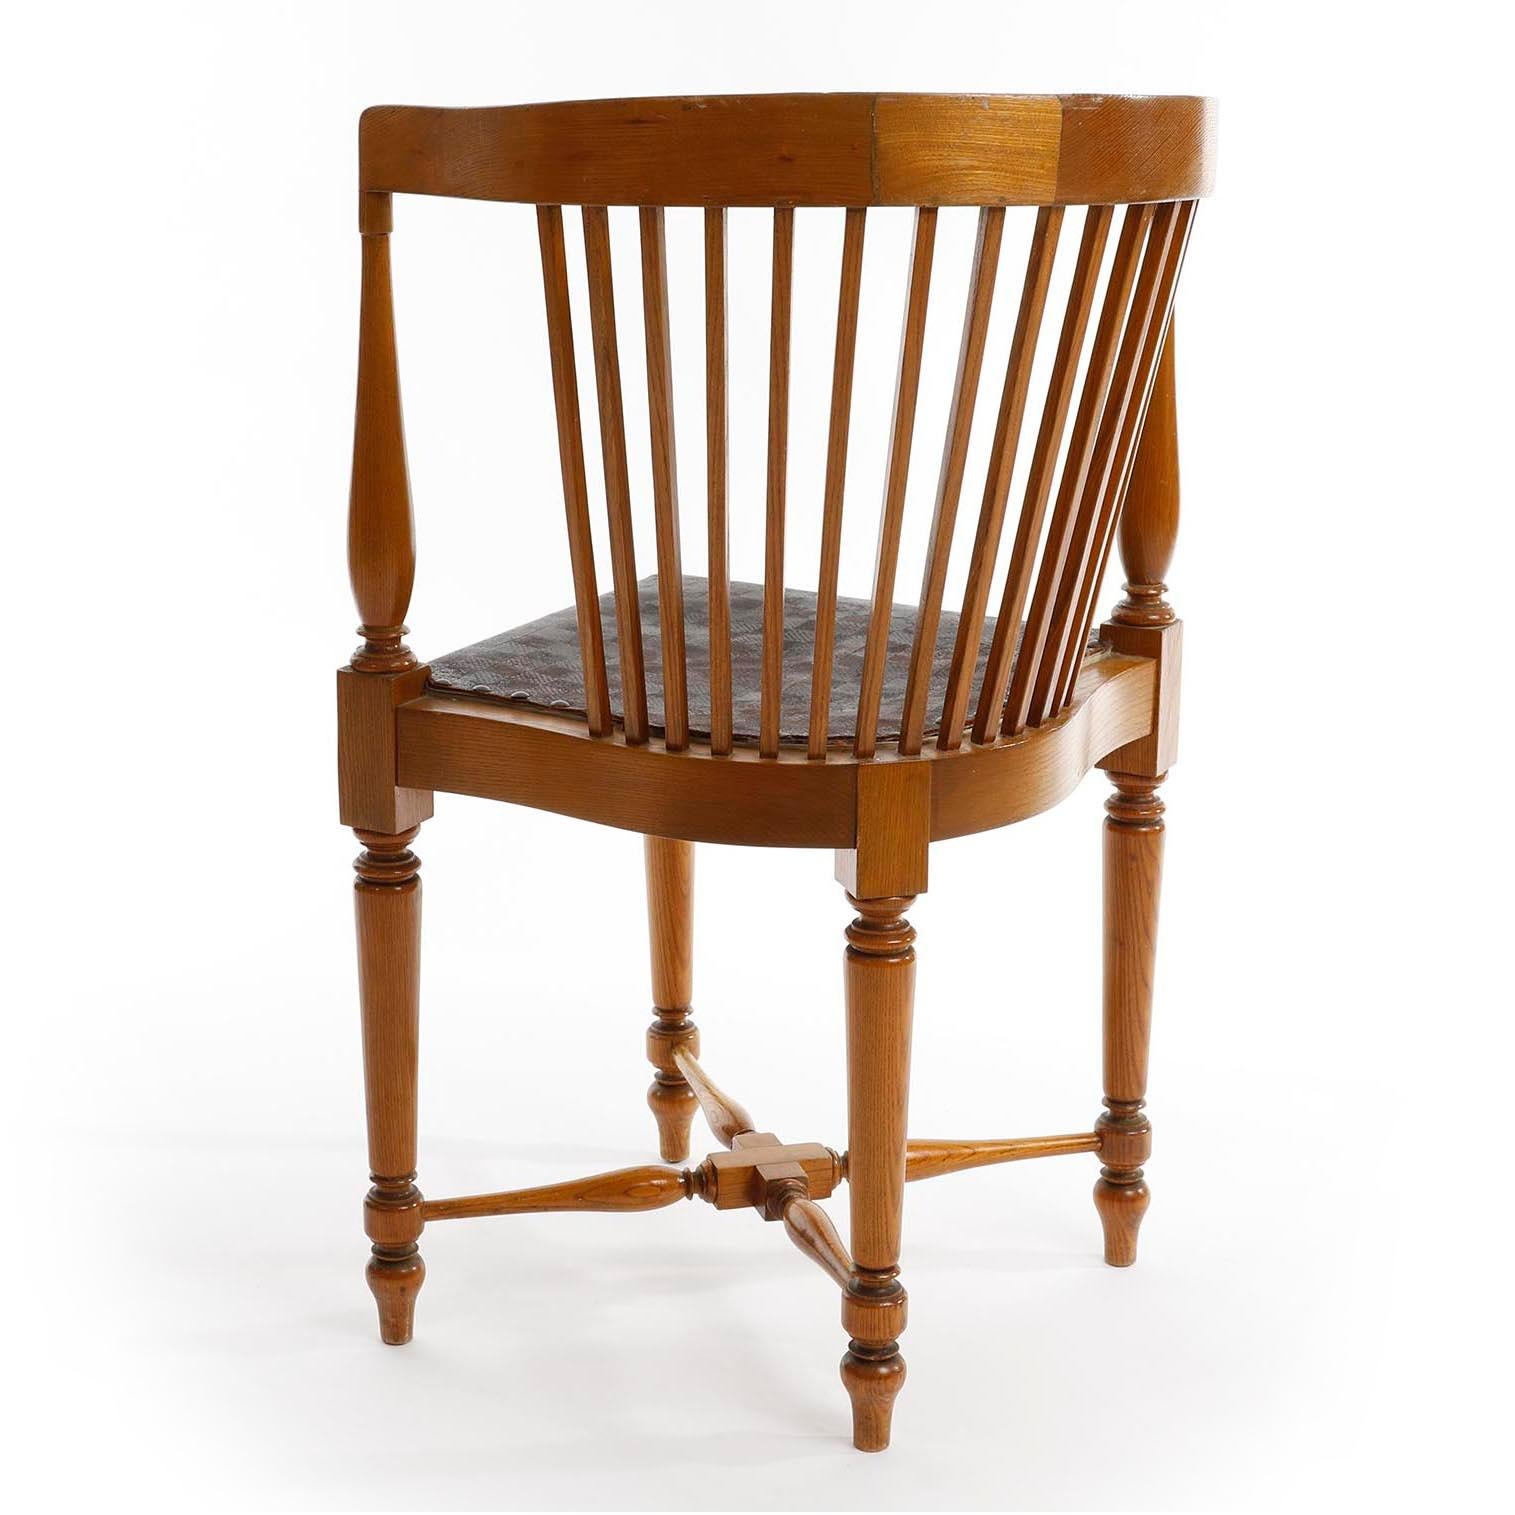 Early 20th Century Adolf Loos Corner Chair, F.O. Schmidt, Oak Wood Leather, Jugendstil, 1898-1900 For Sale